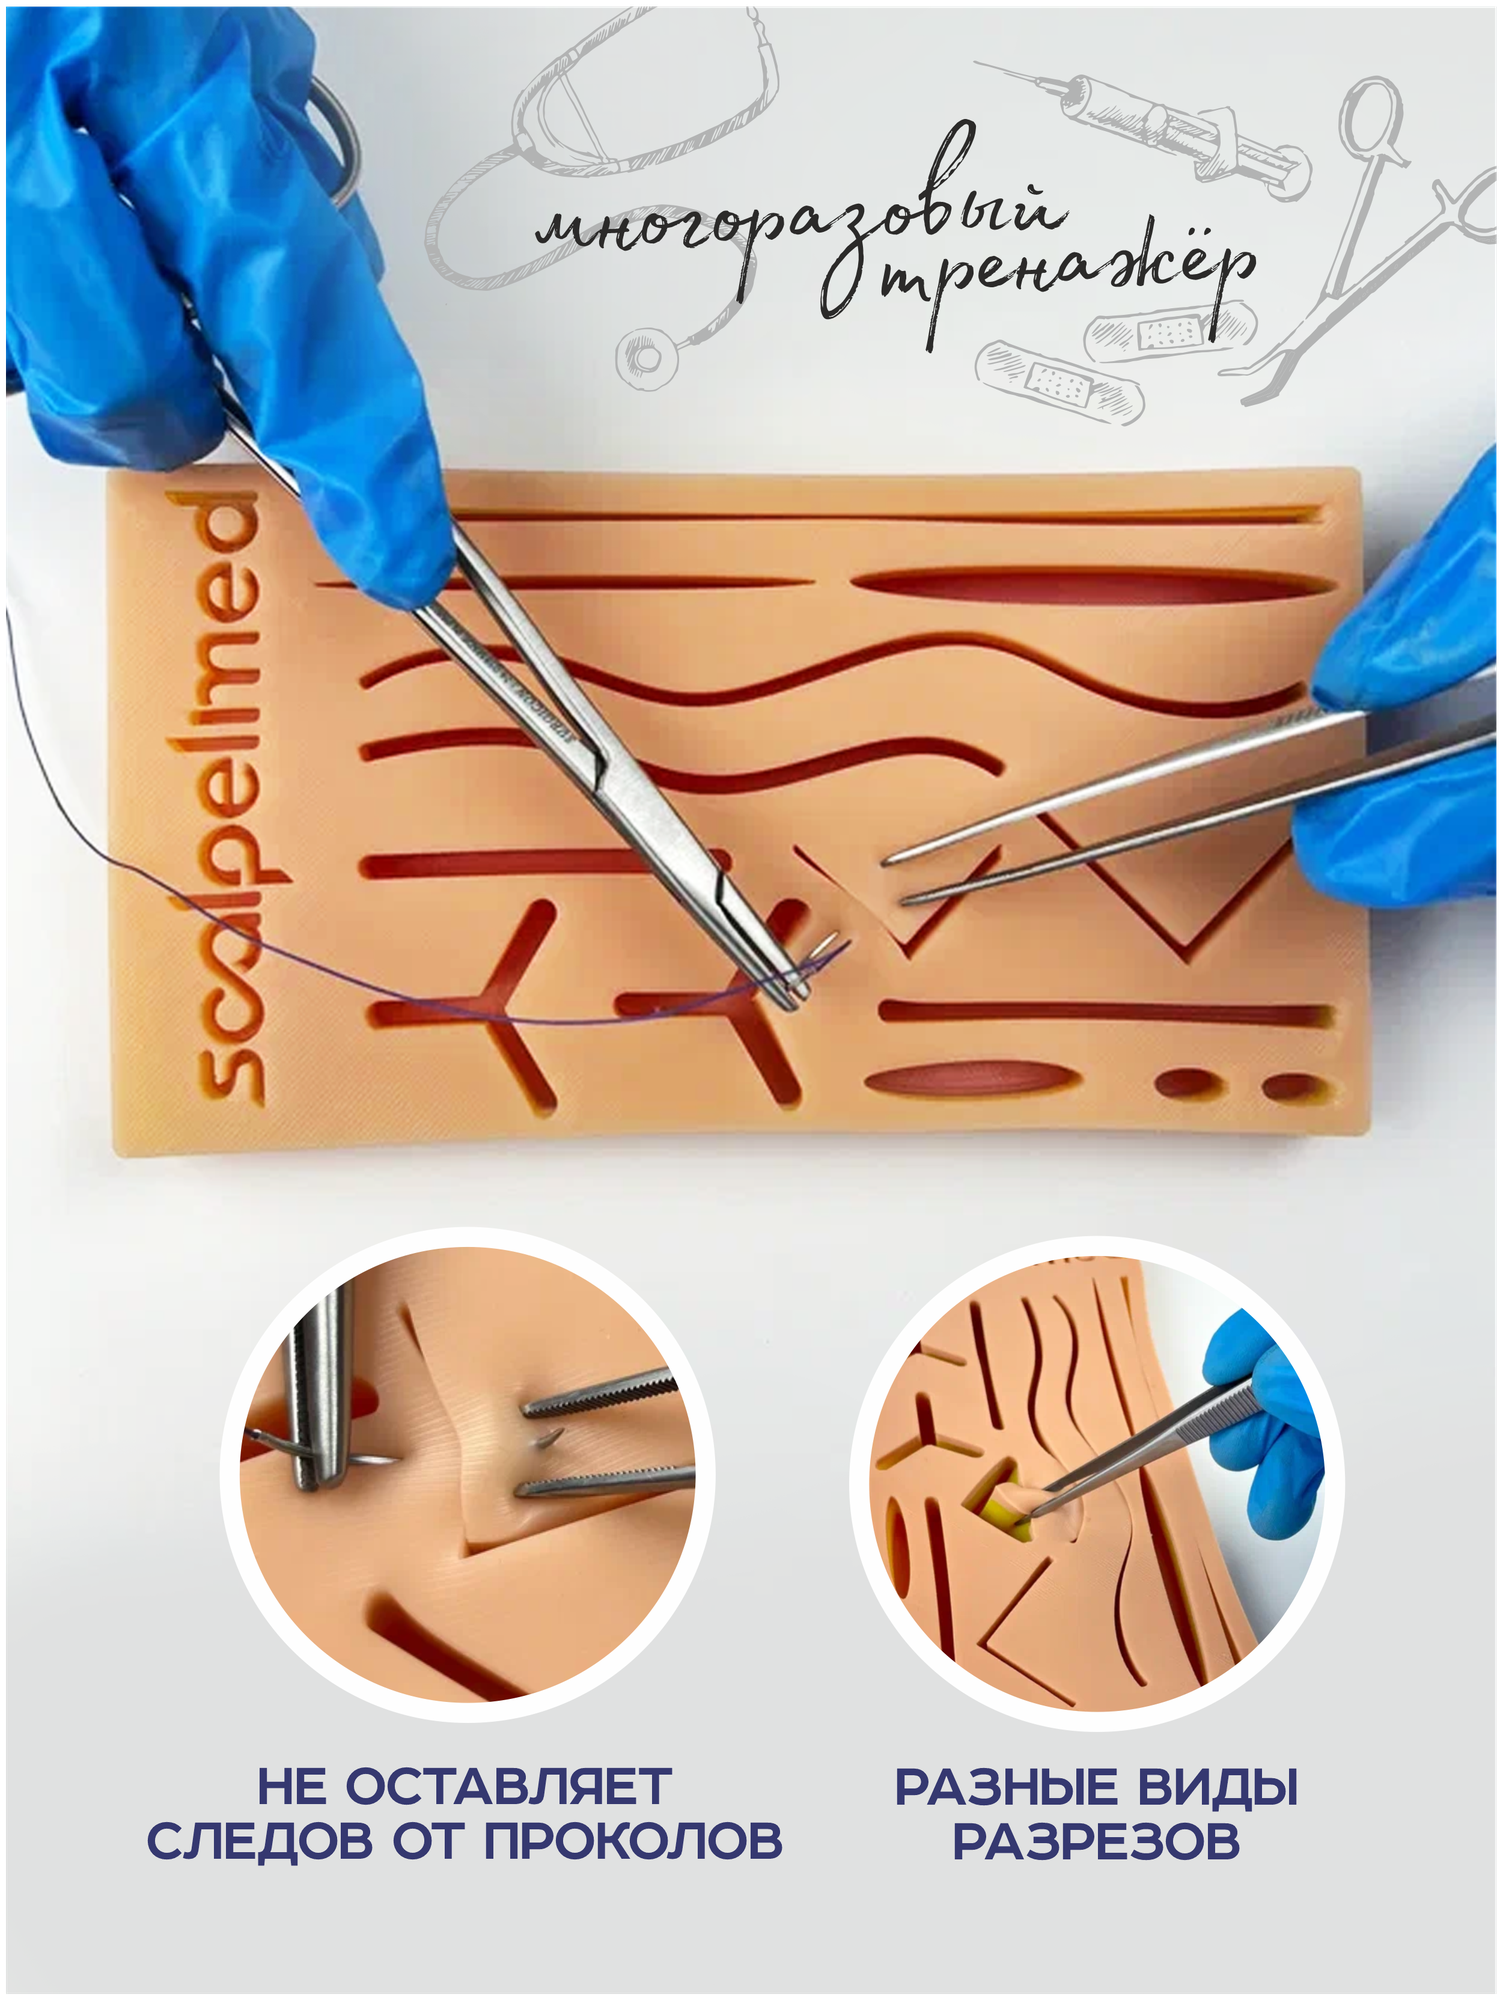 Хирургический набор 1 мини + инструменты стандарт + шовный материал